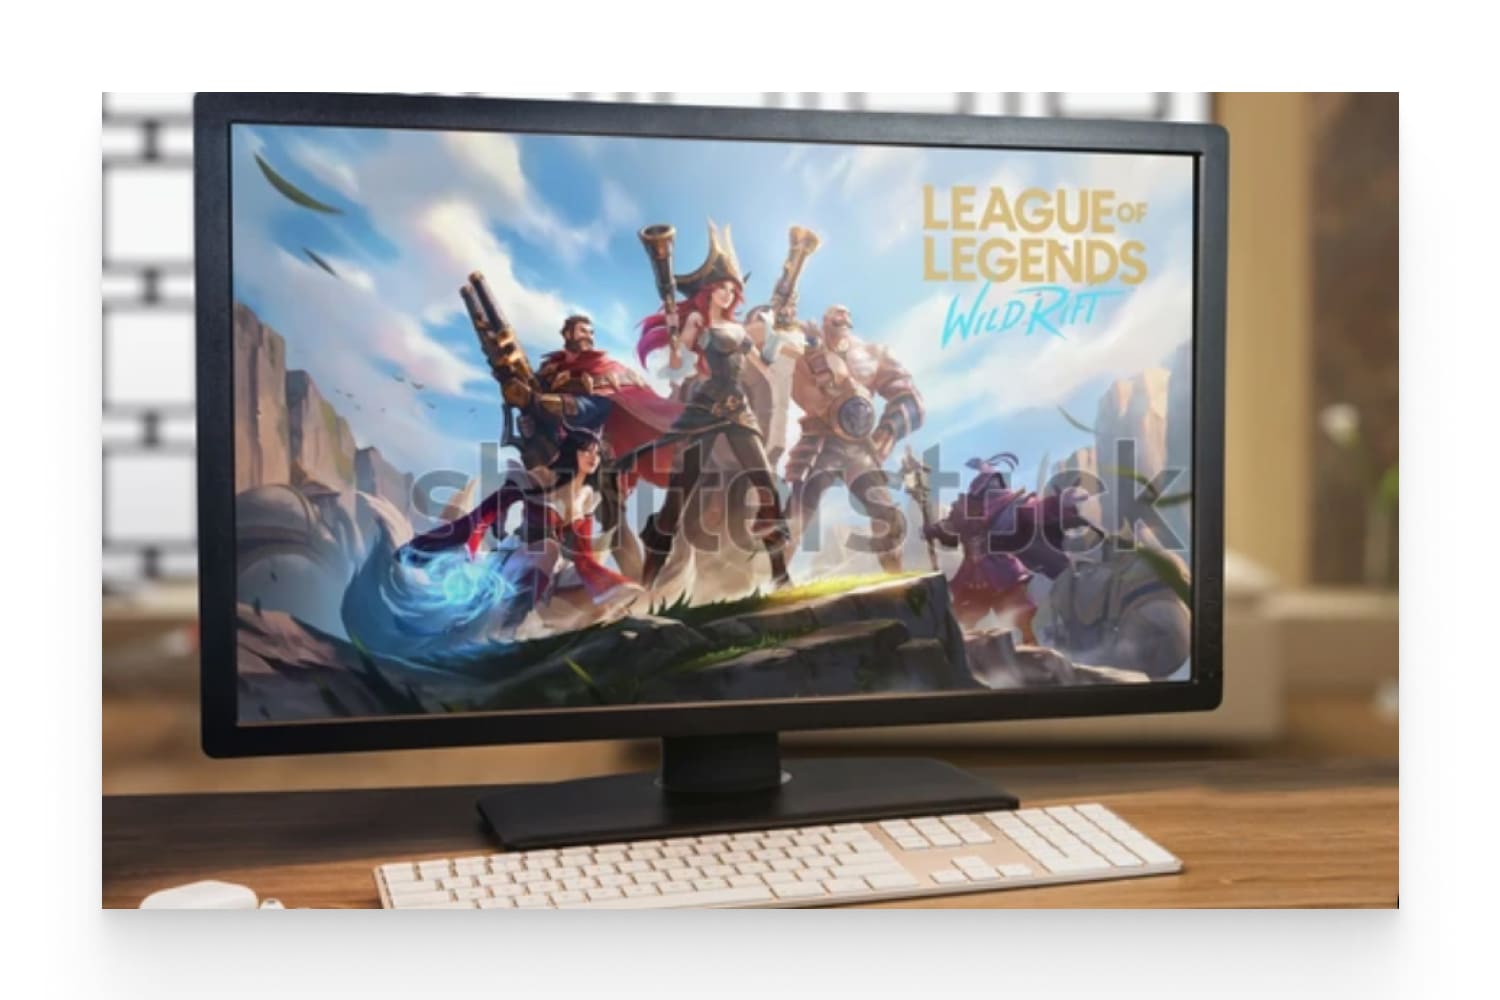 League of Legends Wild Rift game on computer screen.